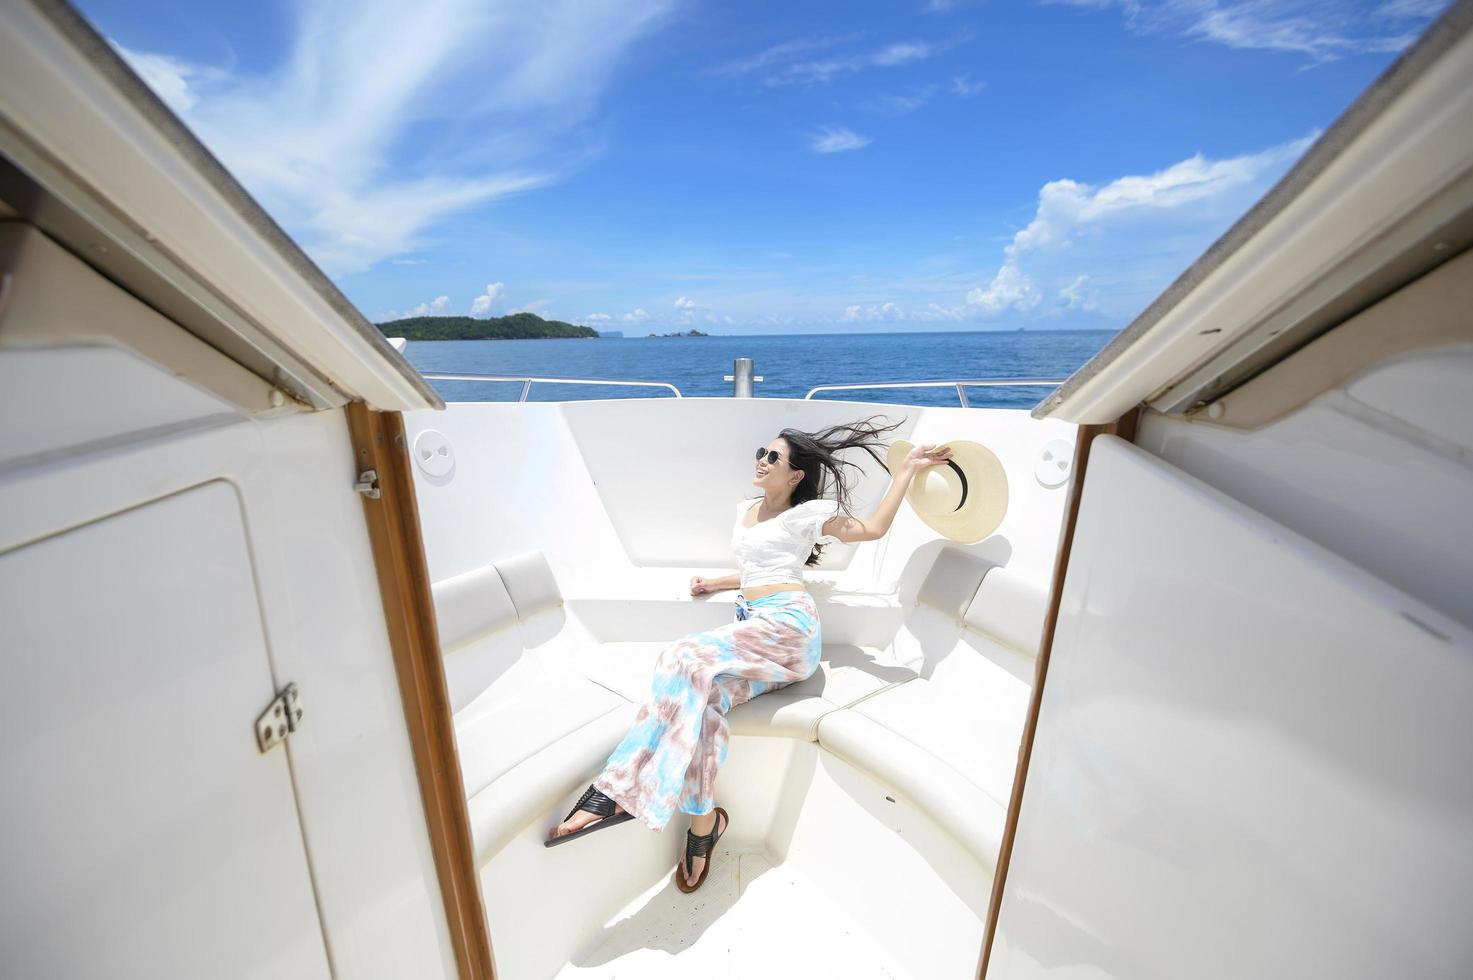 touriste excité appréciant et relaxant sur un hors-bord avec une belle vue sur l'océan et la montagne en arrière-plan photo